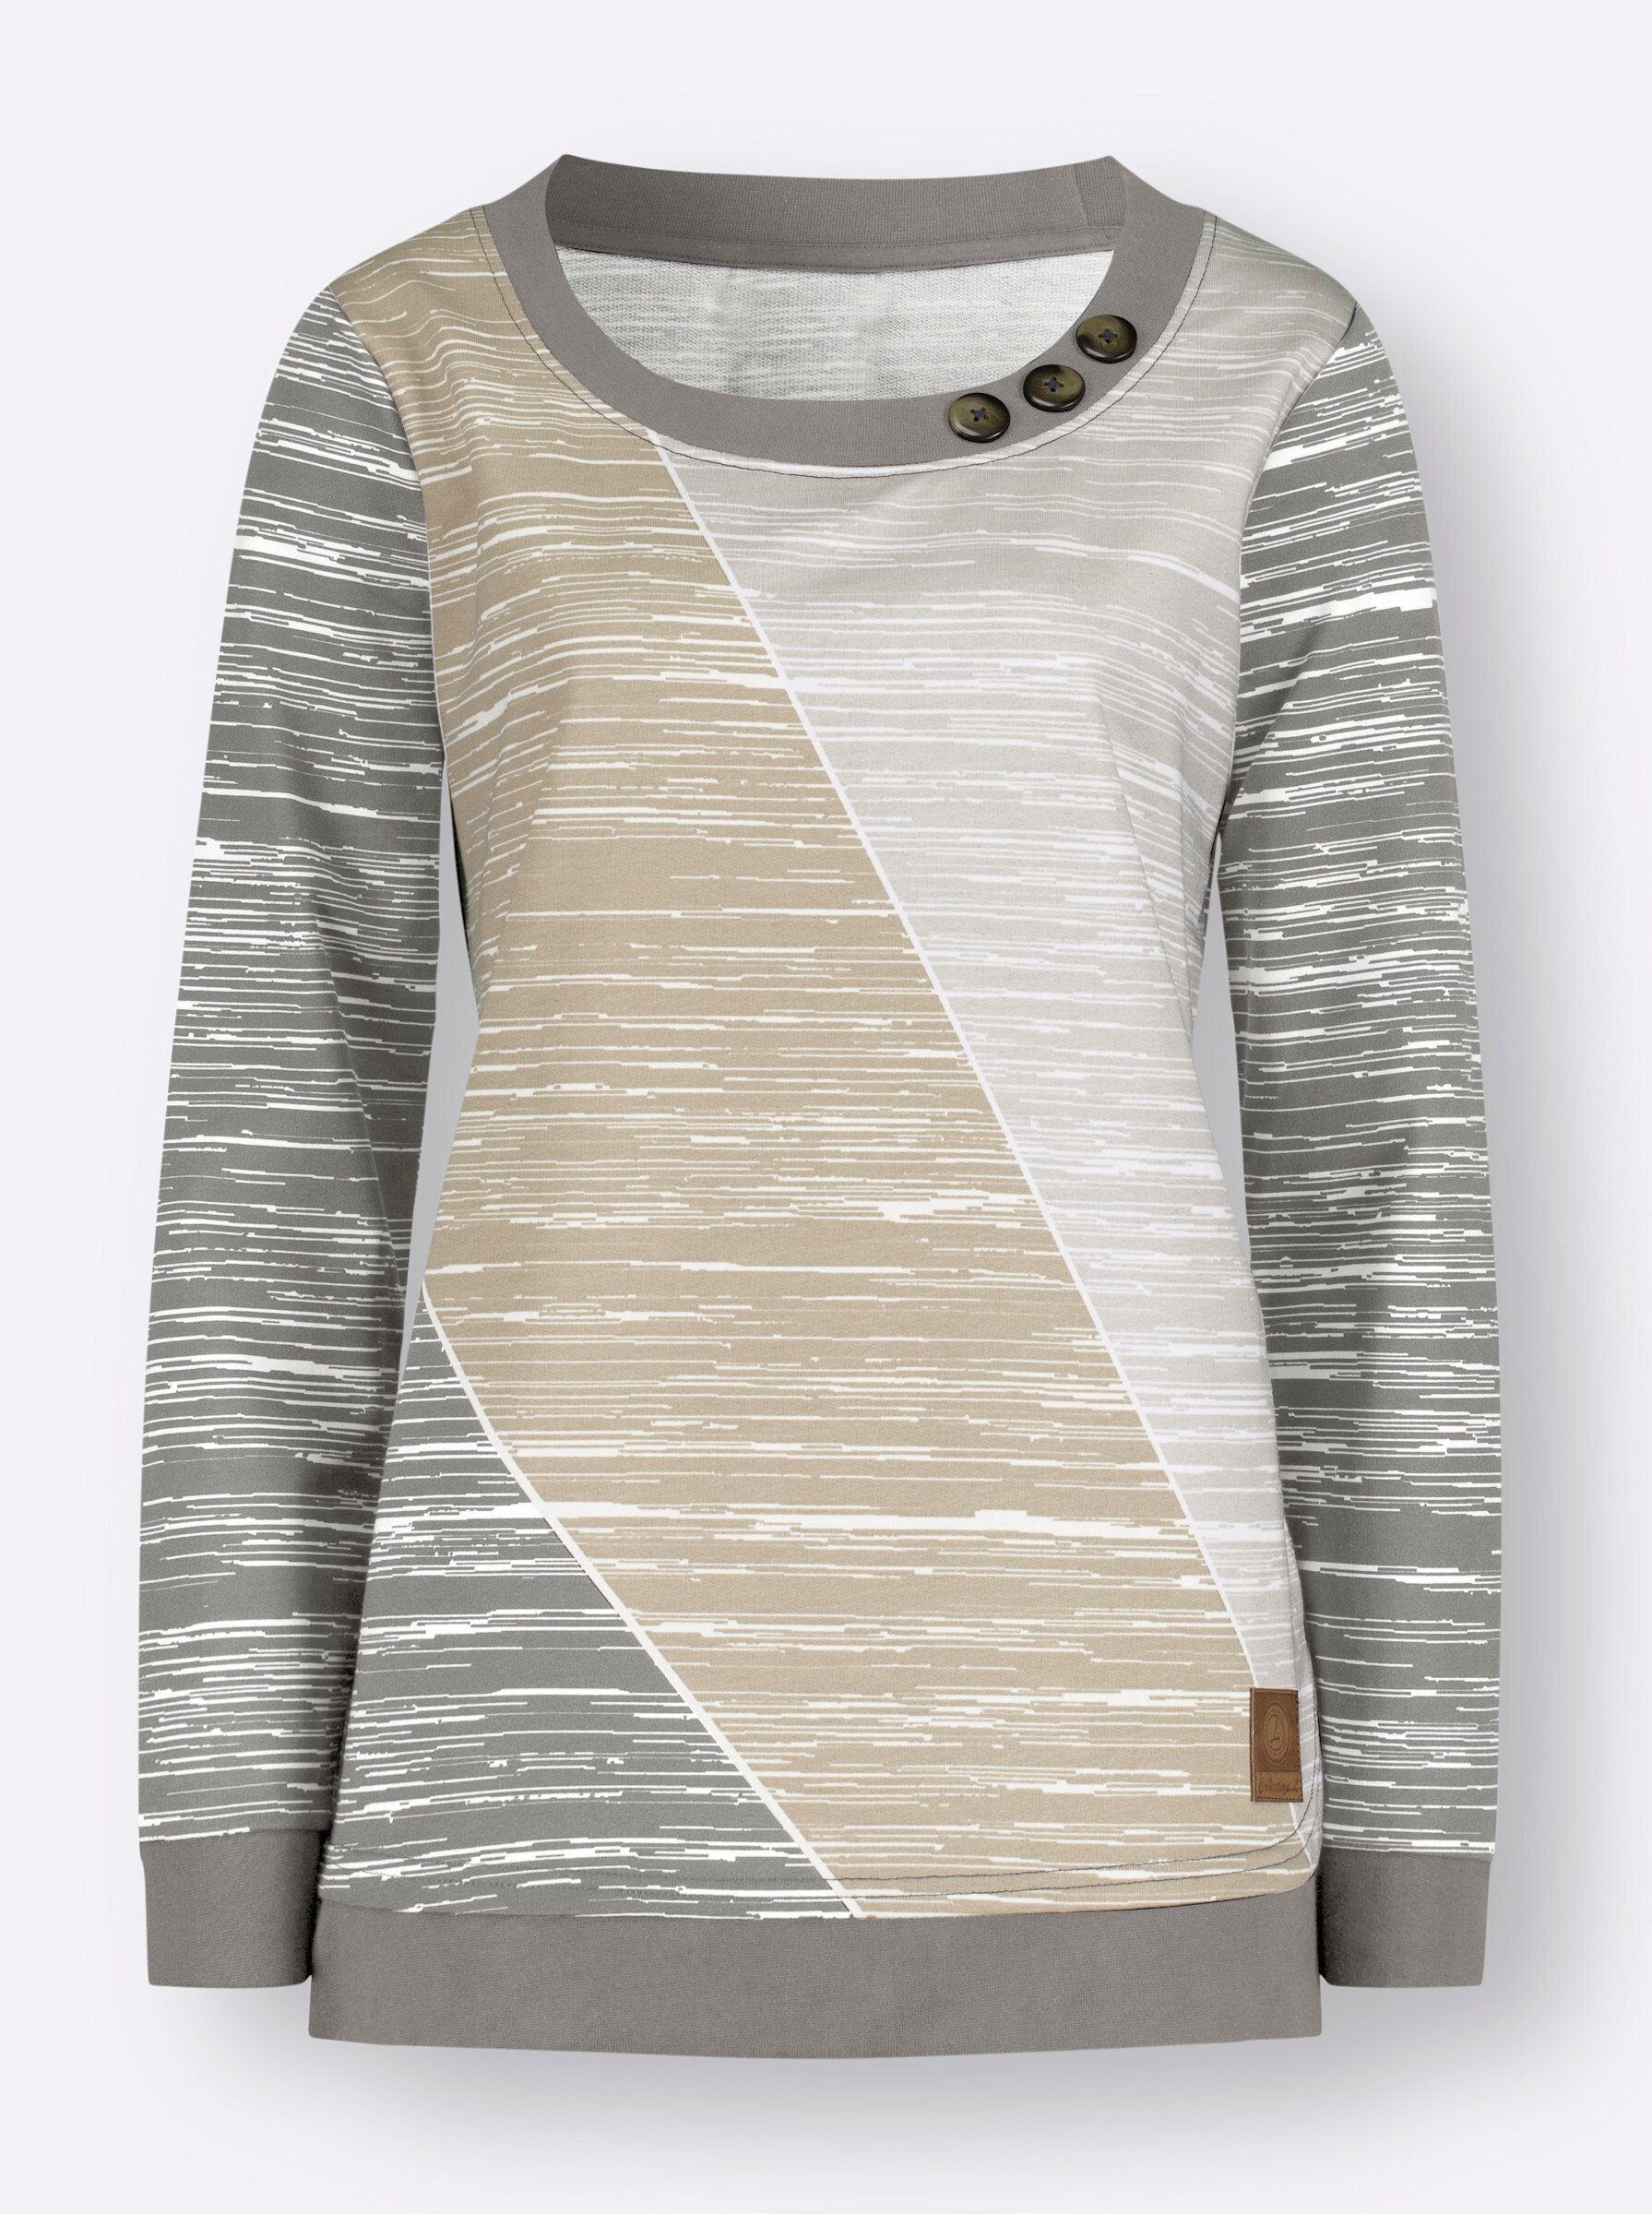 WITT WEIDEN Sweater grau-ecru-bedruckt